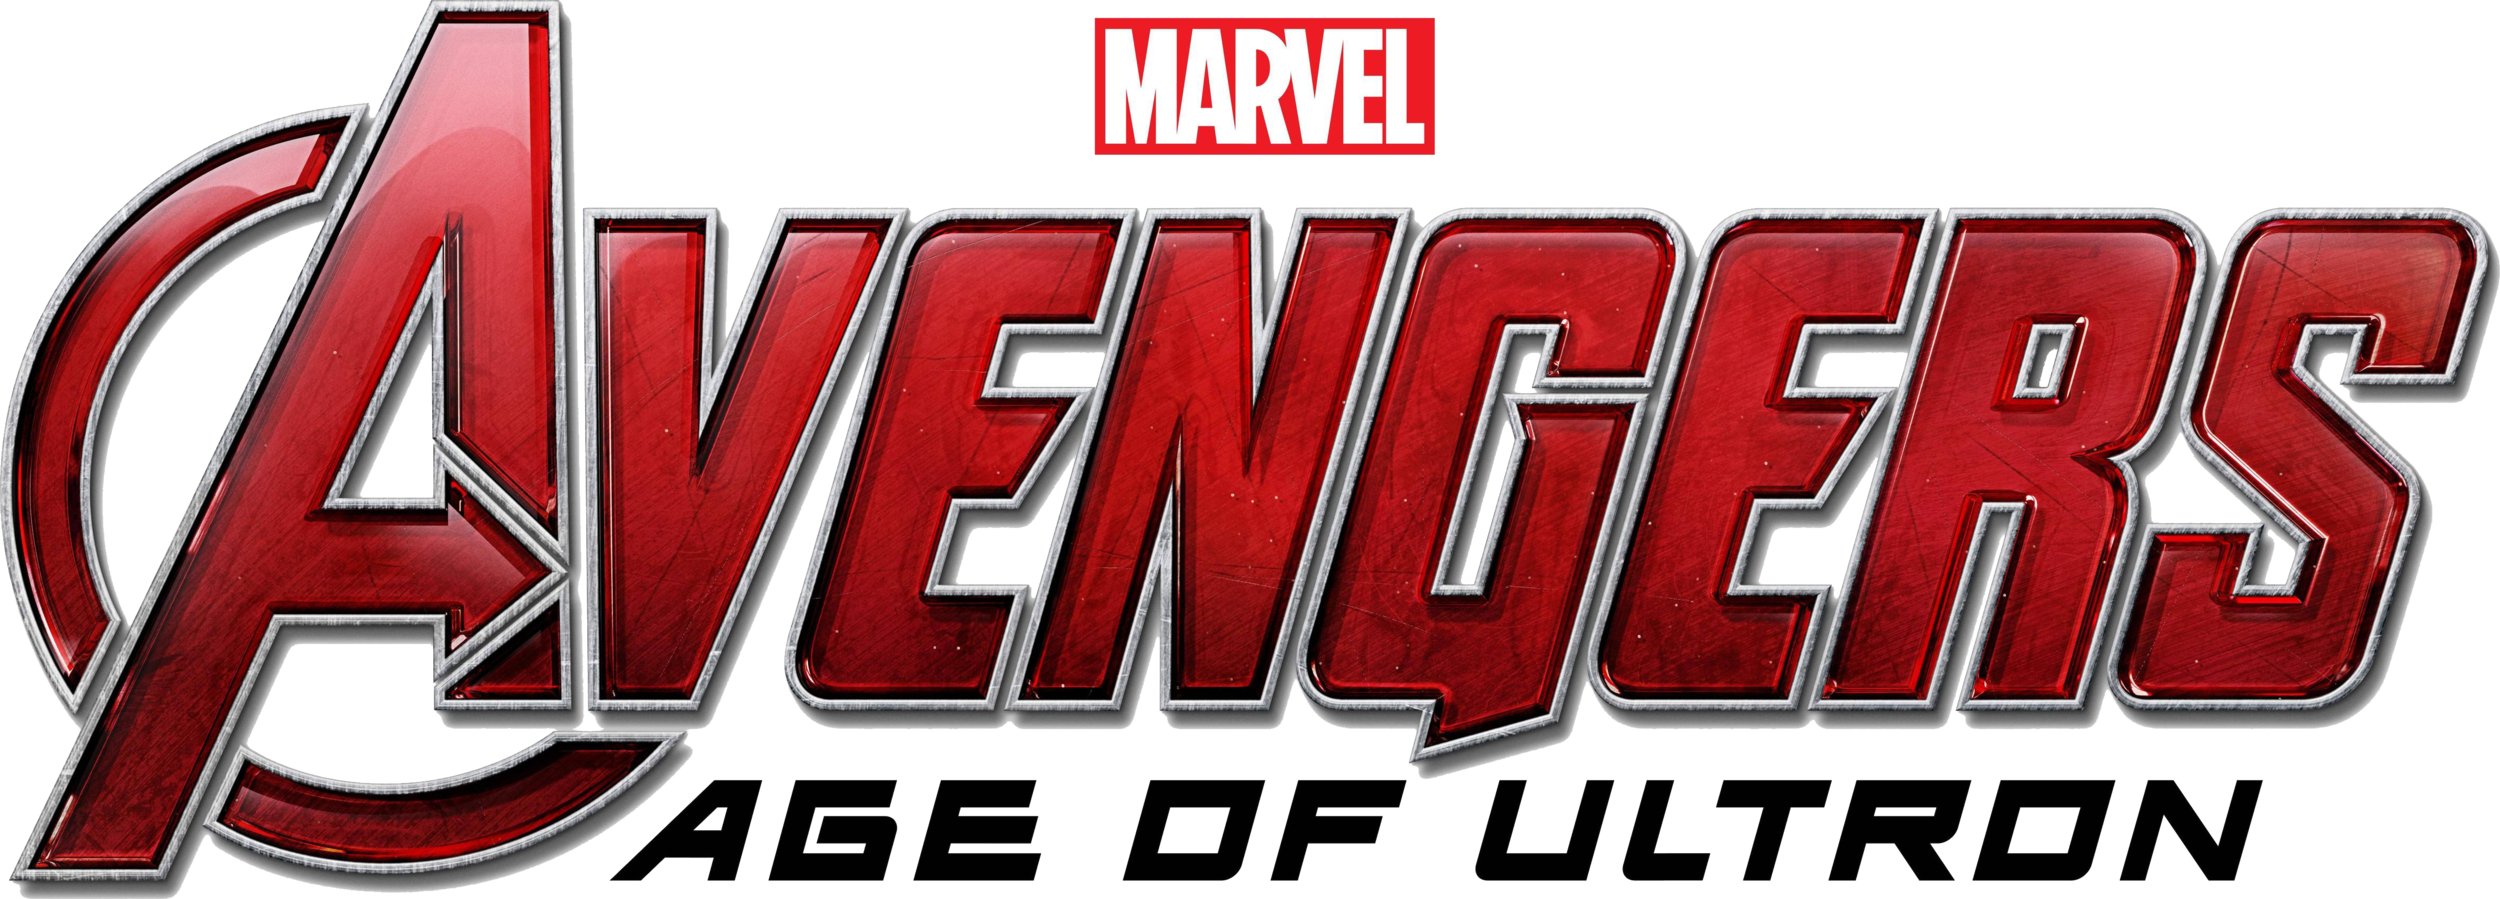 Avenger Logo PNG Images HD